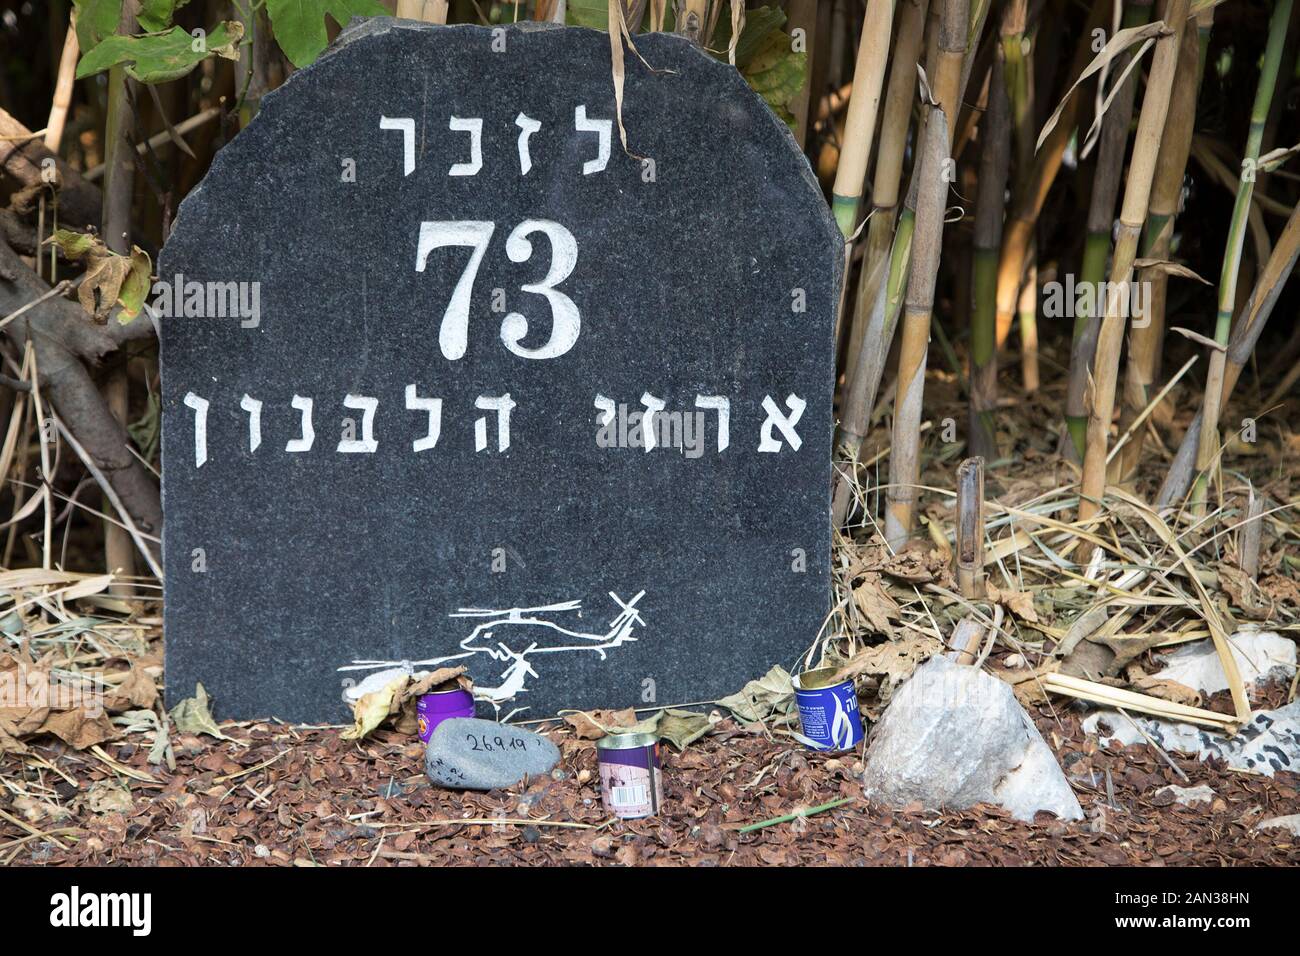 Mémorial pour commémorer les 73 soldats morts lors de la catastrophe de l'hélicoptère de 1997, Dafna, Israël Banque D'Images